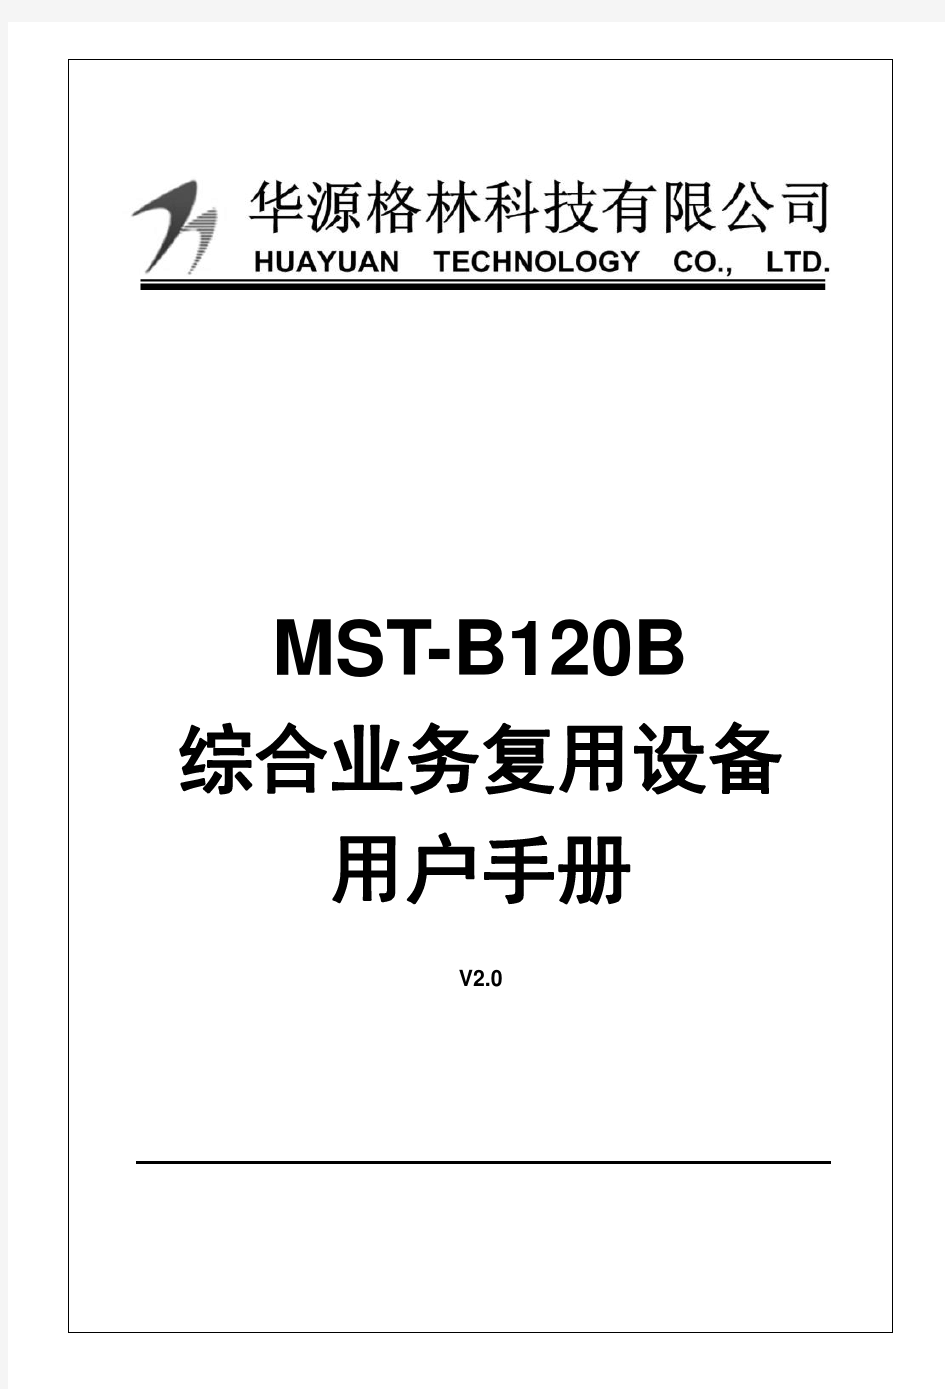 MST-B120B用户手册